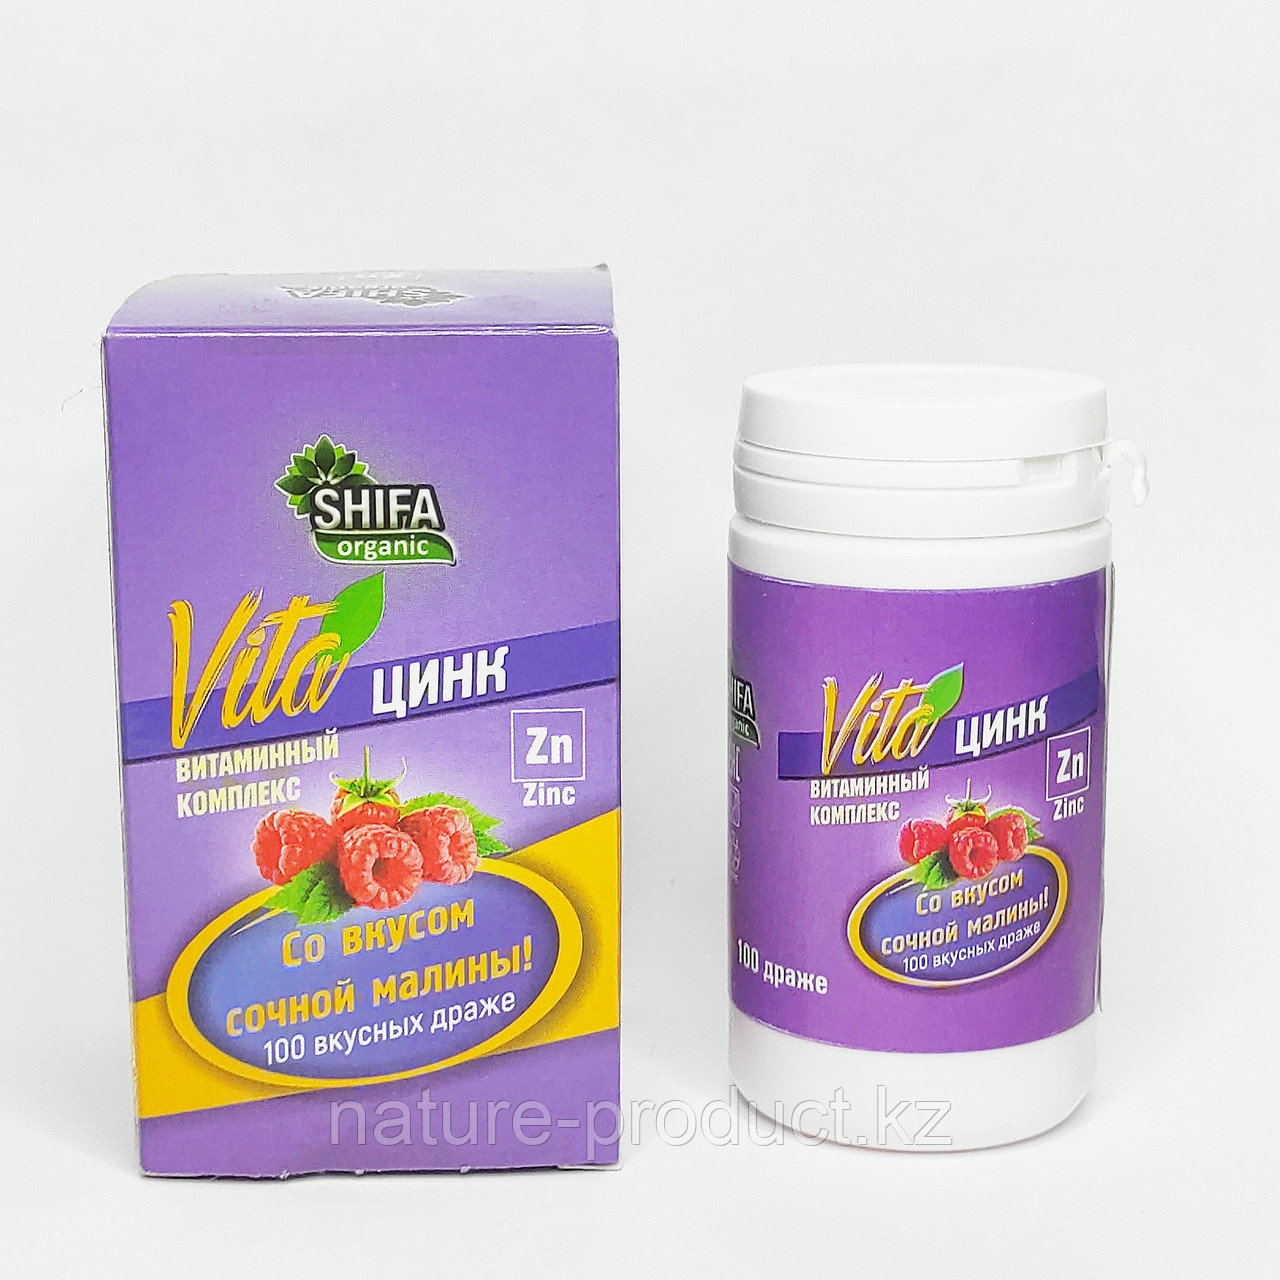 SHIFA Organic Витаминный комплекс VITA ЦИНК со вкусом сочной малины (100 драже)